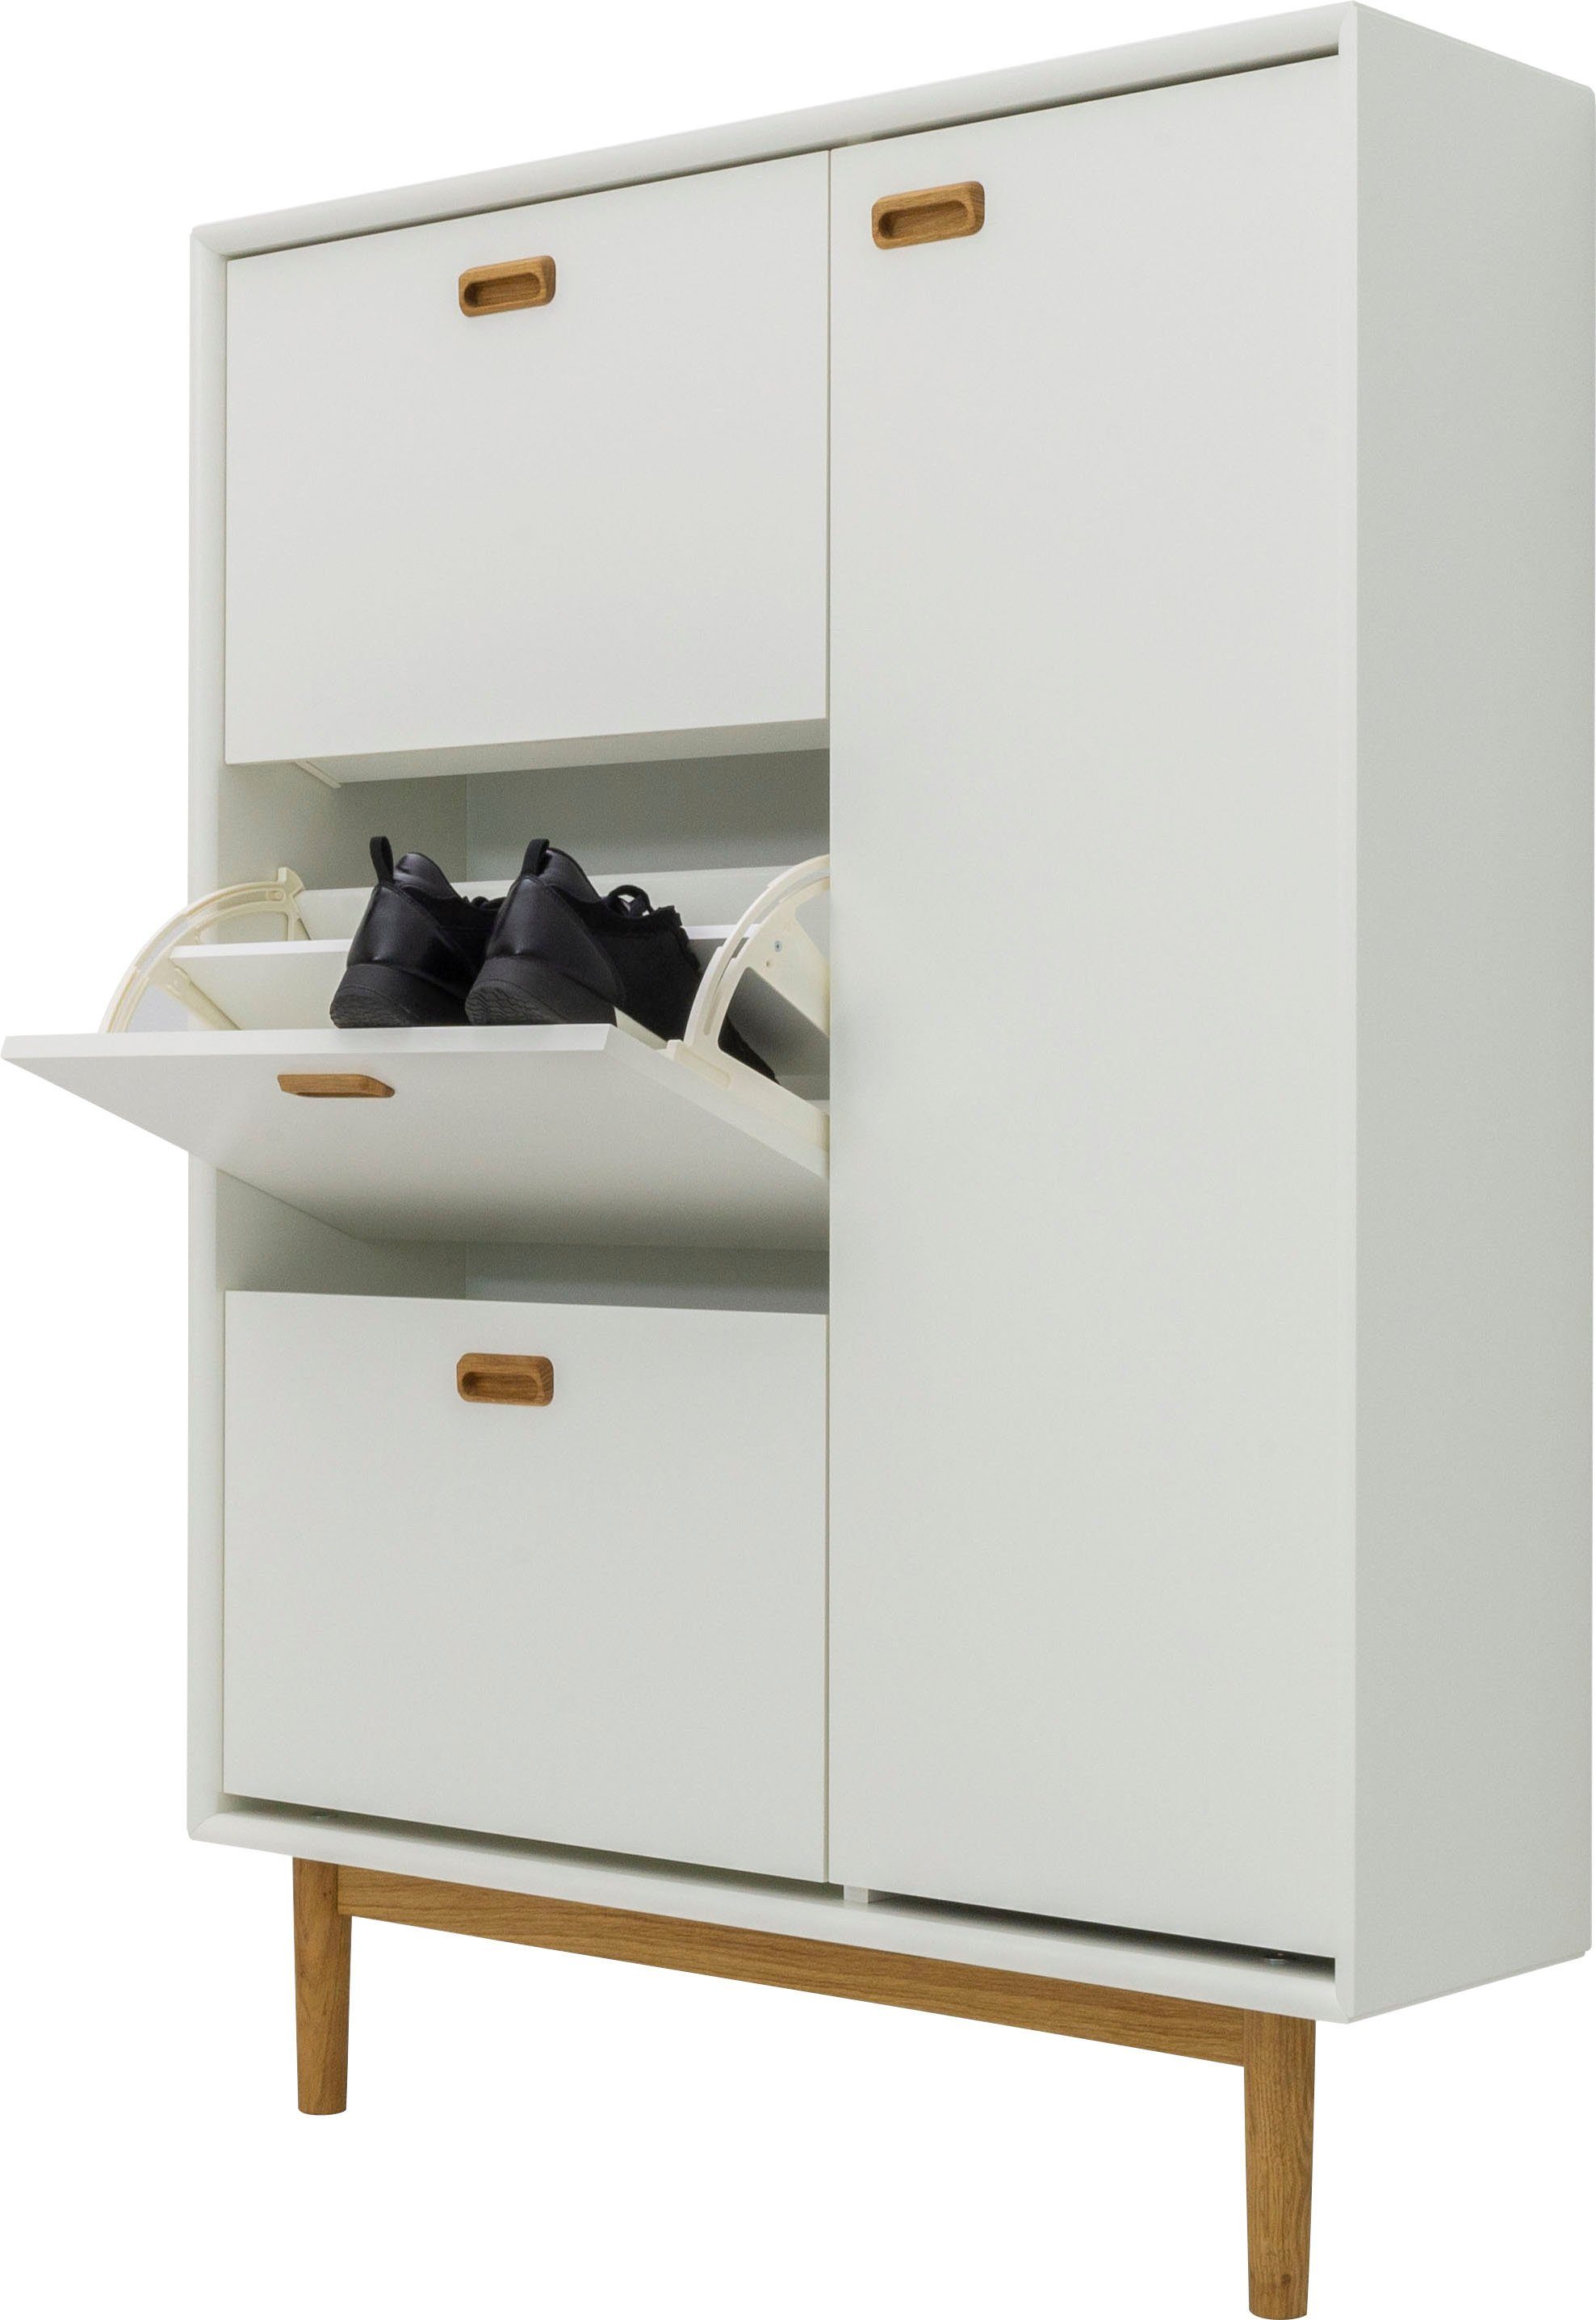 Tenzo Schuhschrank SVEA von Design Design Klappen, Tenzo Tür 3 studio white und 1 mit